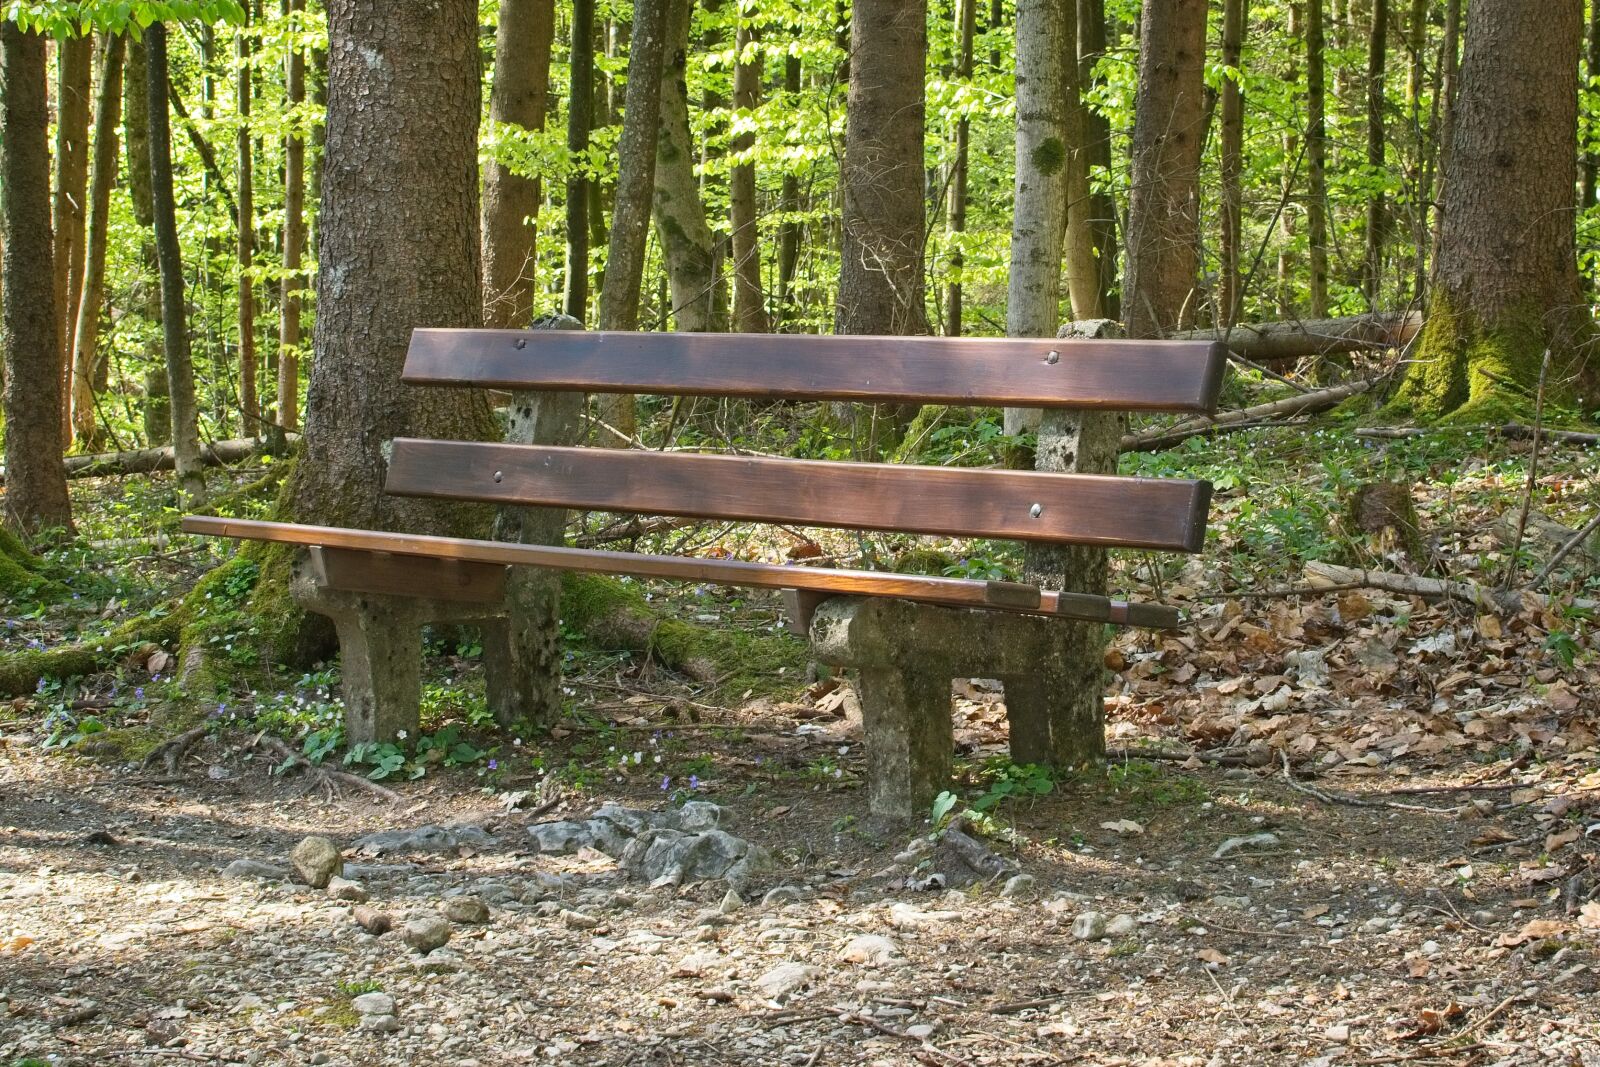 Nikon AF-S DX Nikkor 35mm F1.8G sample photo. Bench, resting place, forest photography